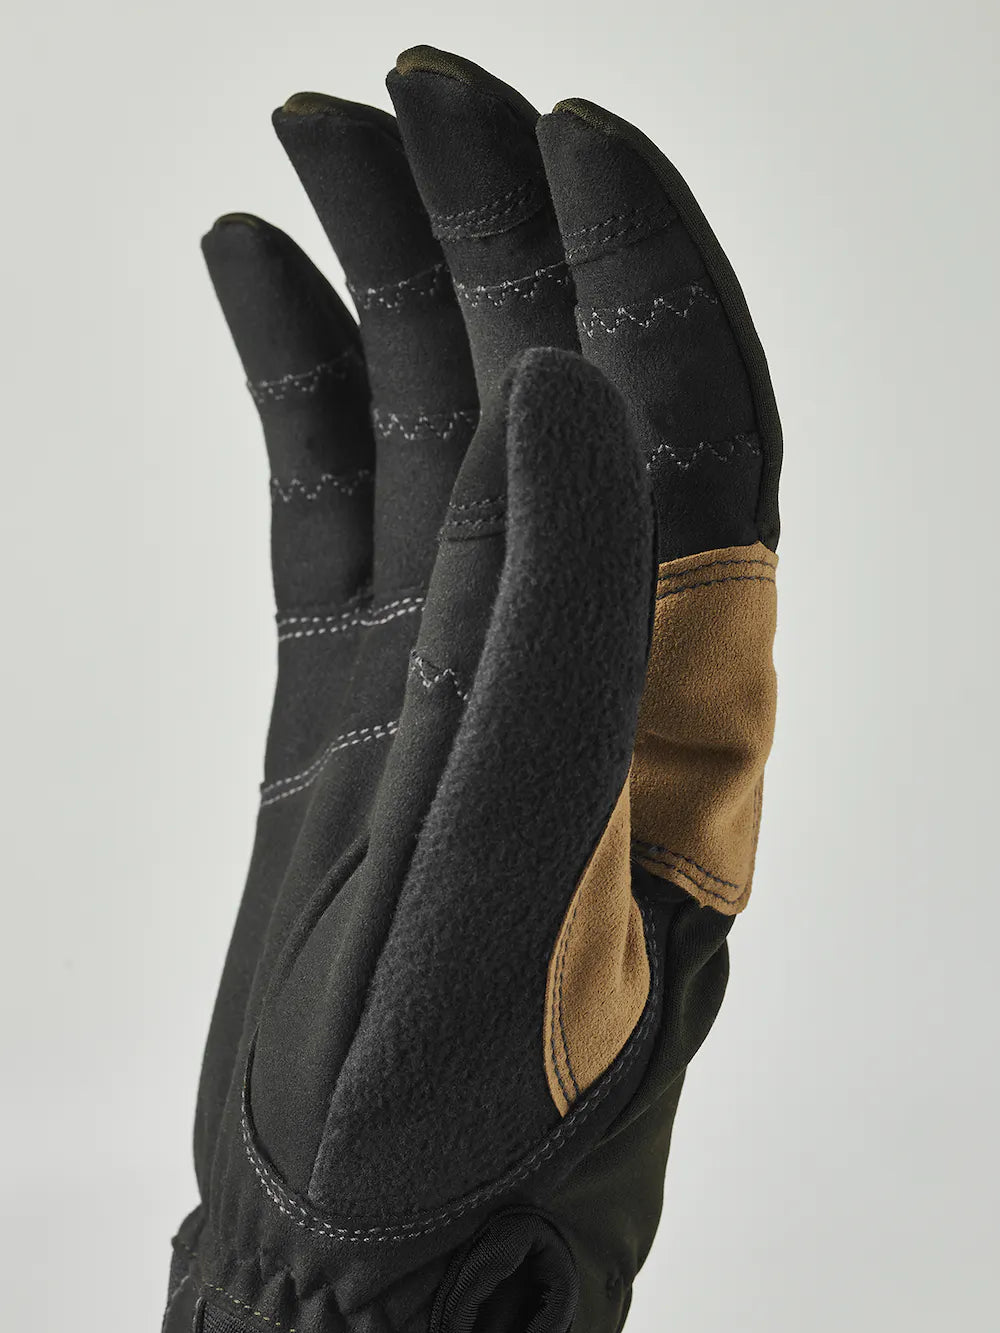 Ergo Grip Active Wool Terry - 5 finger (Size 11) - Dark forest / Black